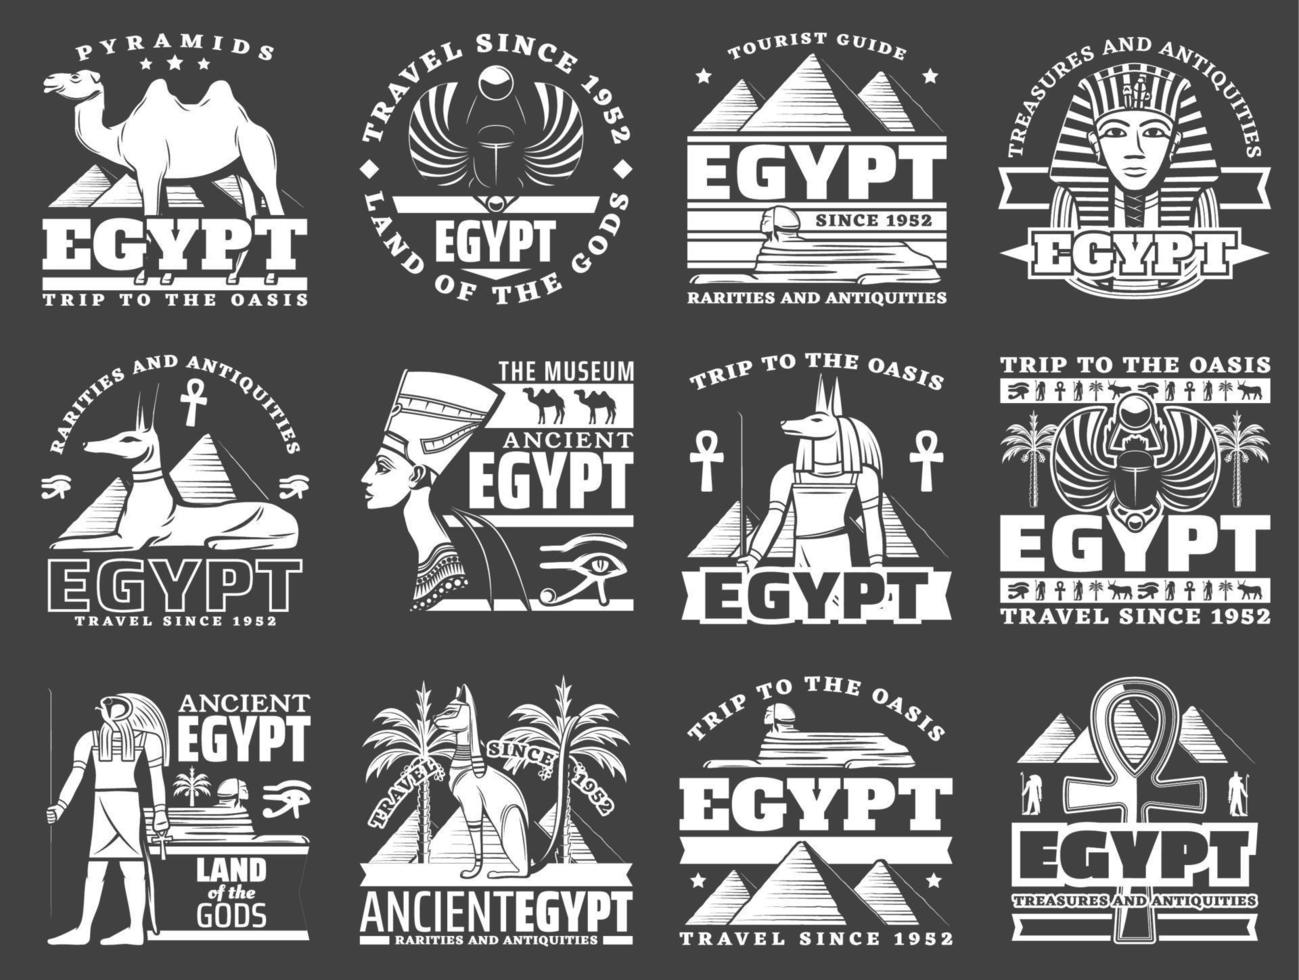 iconos de la antigua pirámide egipcia, dios, ankh, esfinge vector